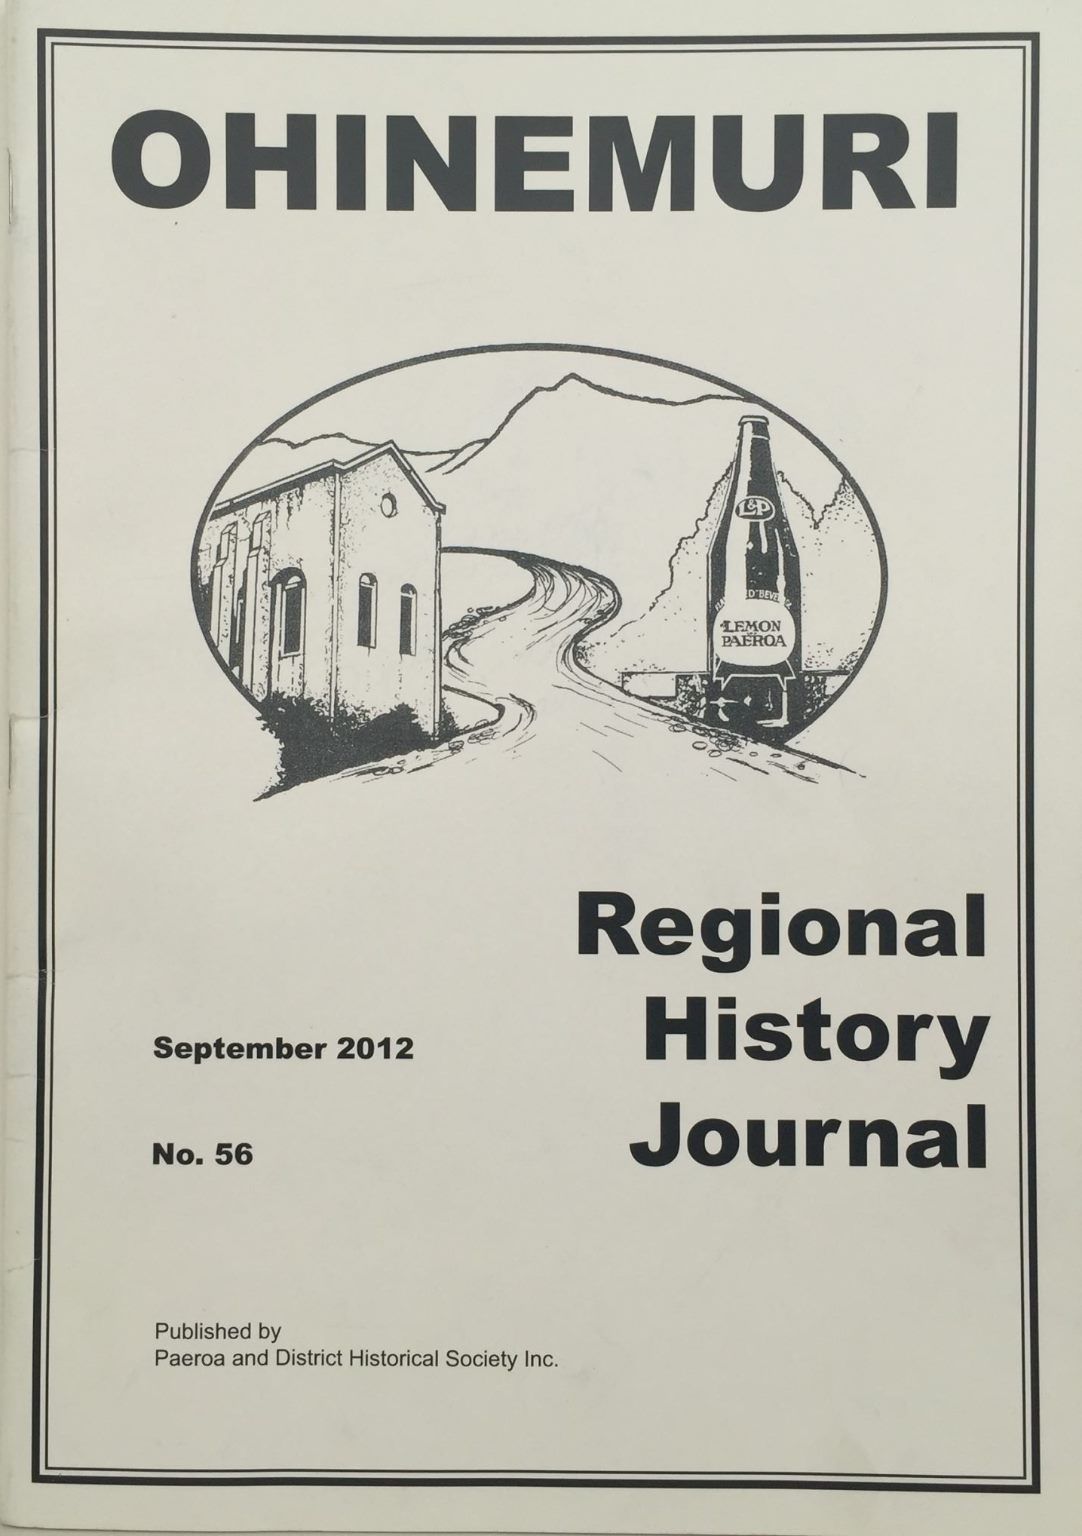 OHINEMURI: Regional History Journal. No 56